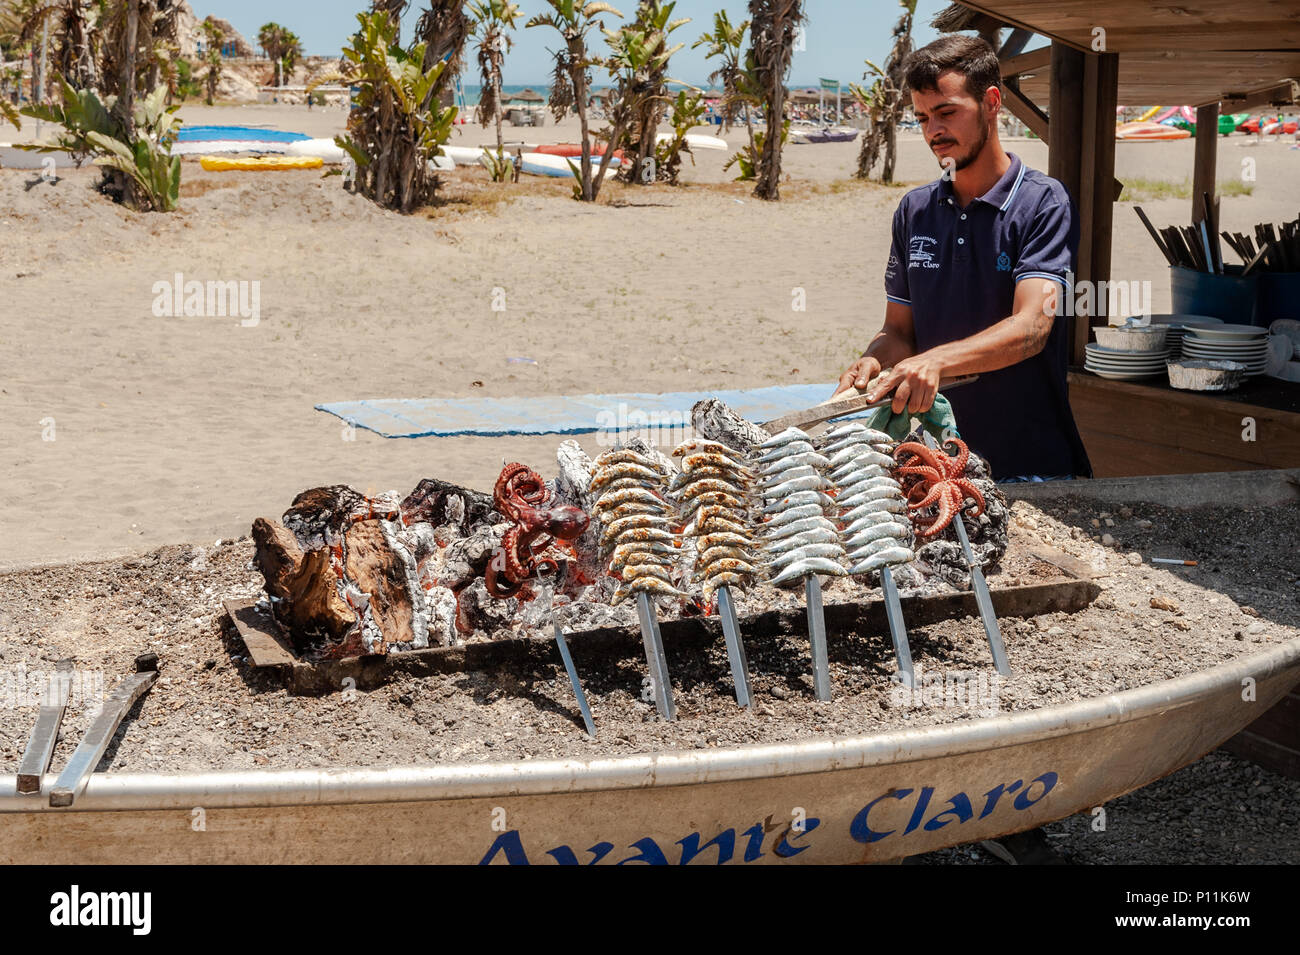 Man cooking sardines et le poulpe sur un barbecue sur la plage de Malaga, Axarquía, la Cala del Moral municipalité de Rincón de la Victoria, Malaga, Espagne Banque D'Images